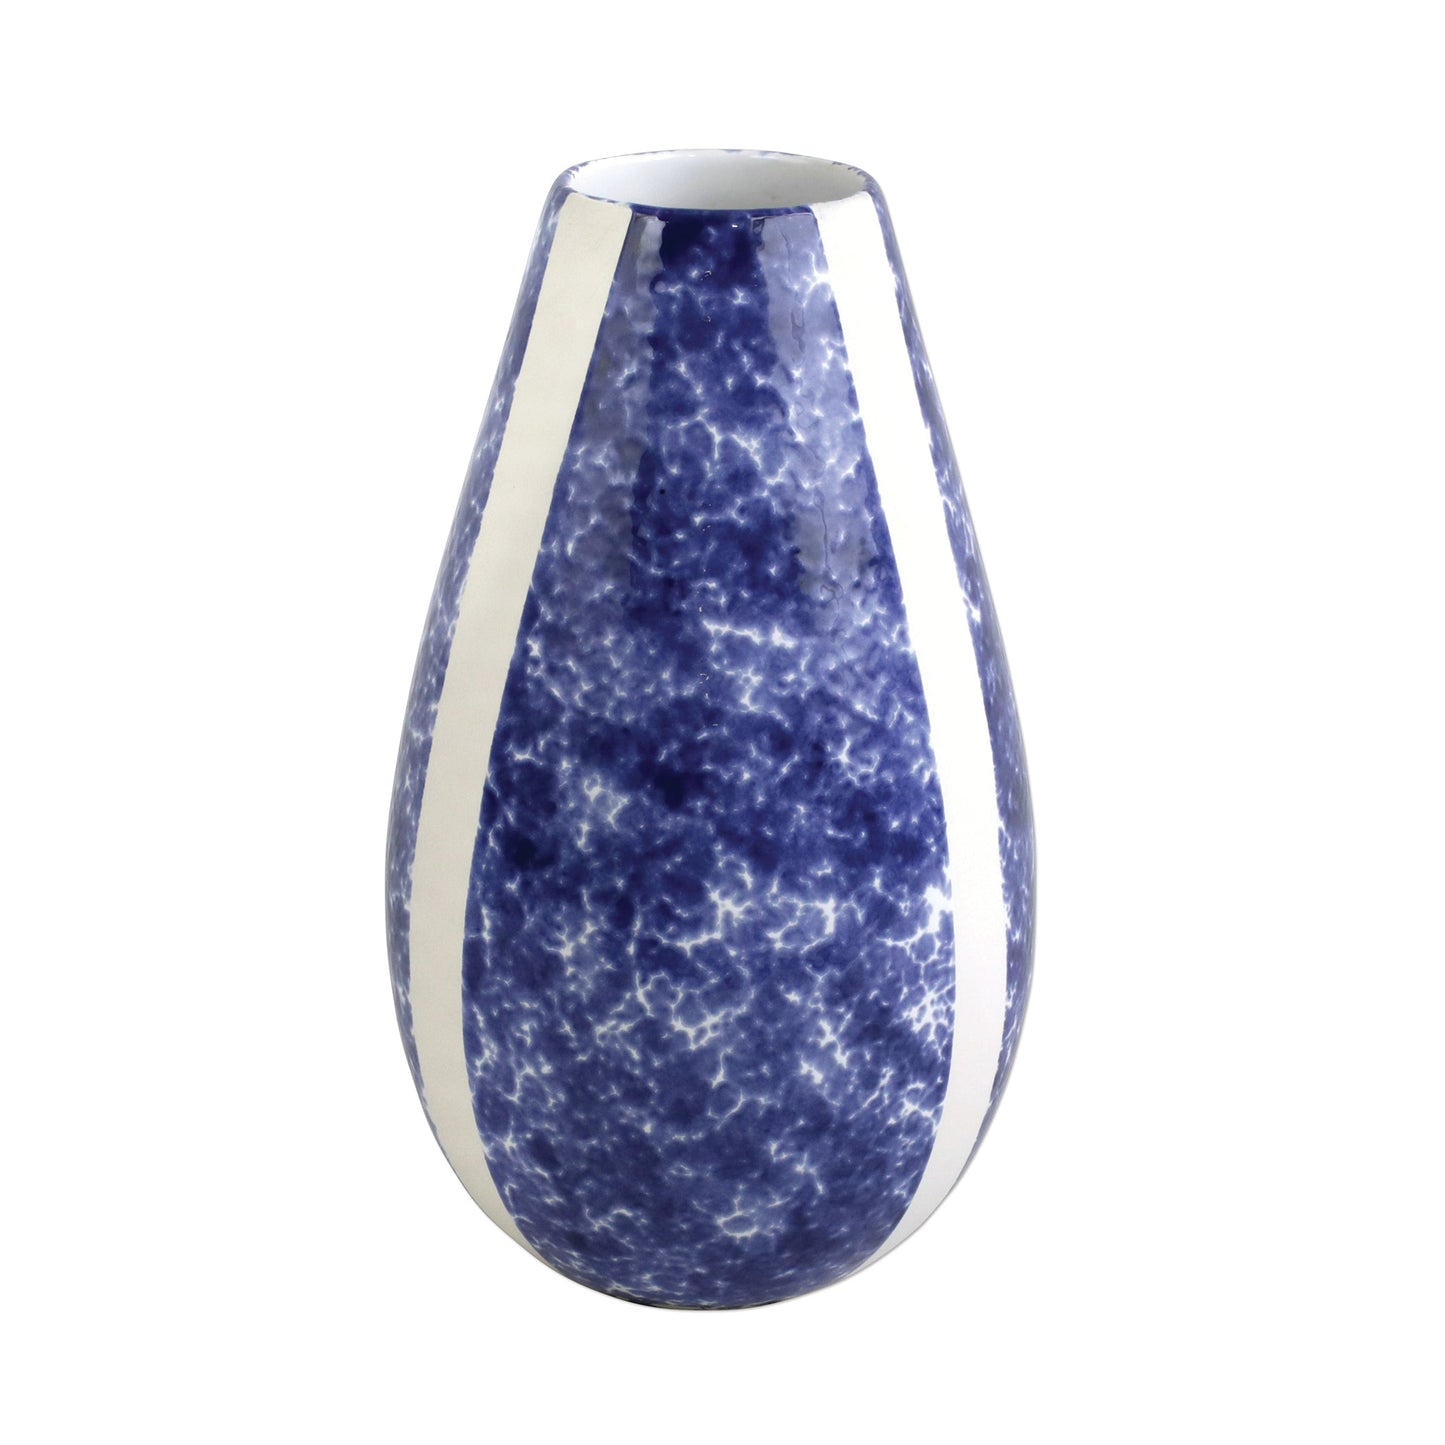 VIETRI Santorini Sponged Vase